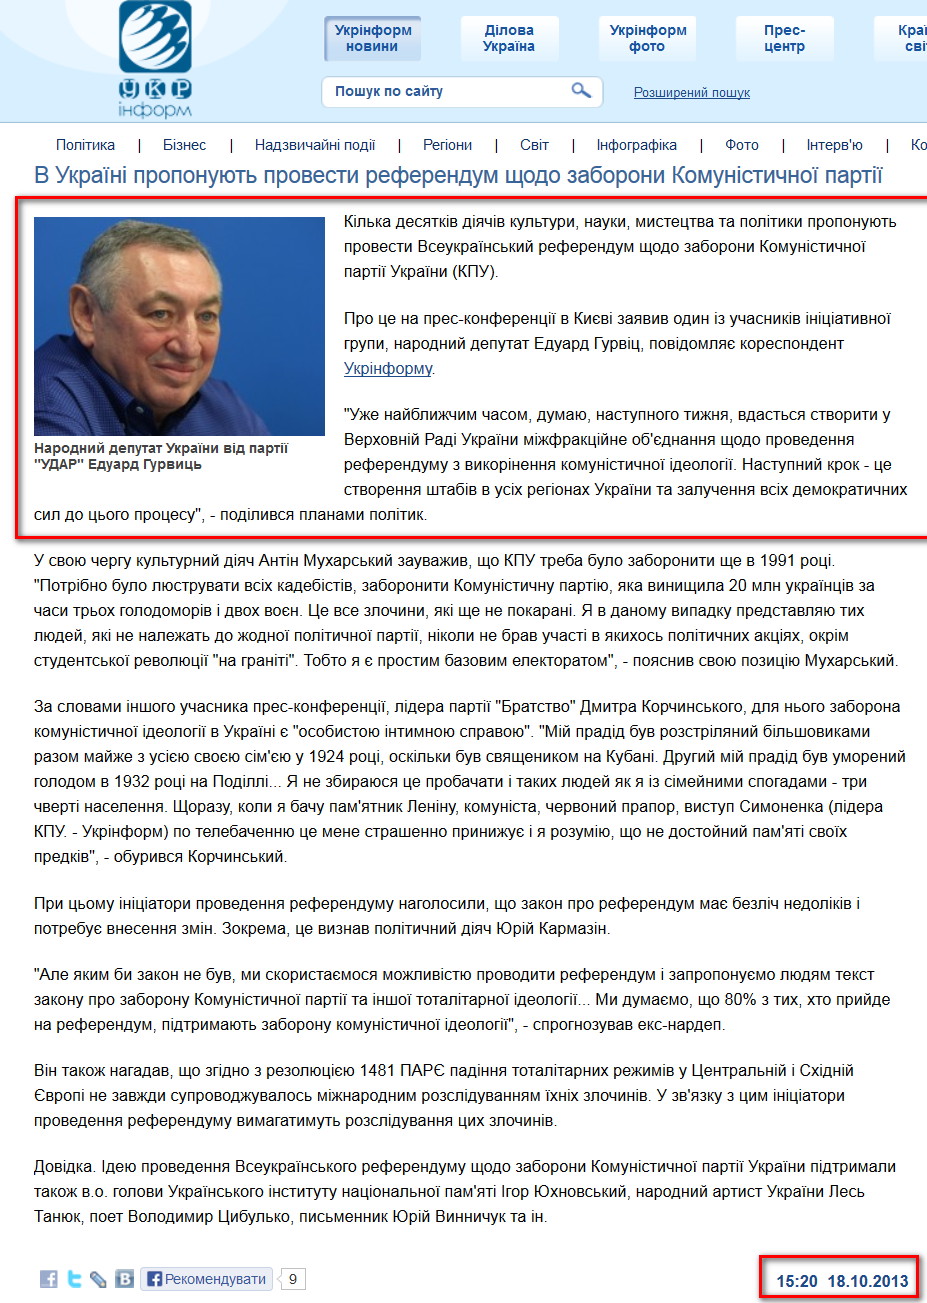 http://www.ukrinform.ua/ukr/news/v_ukraiini_proponuyut_provesti_referendum_shchodo_zaboroni_komunistichnoii_partiii_1874524